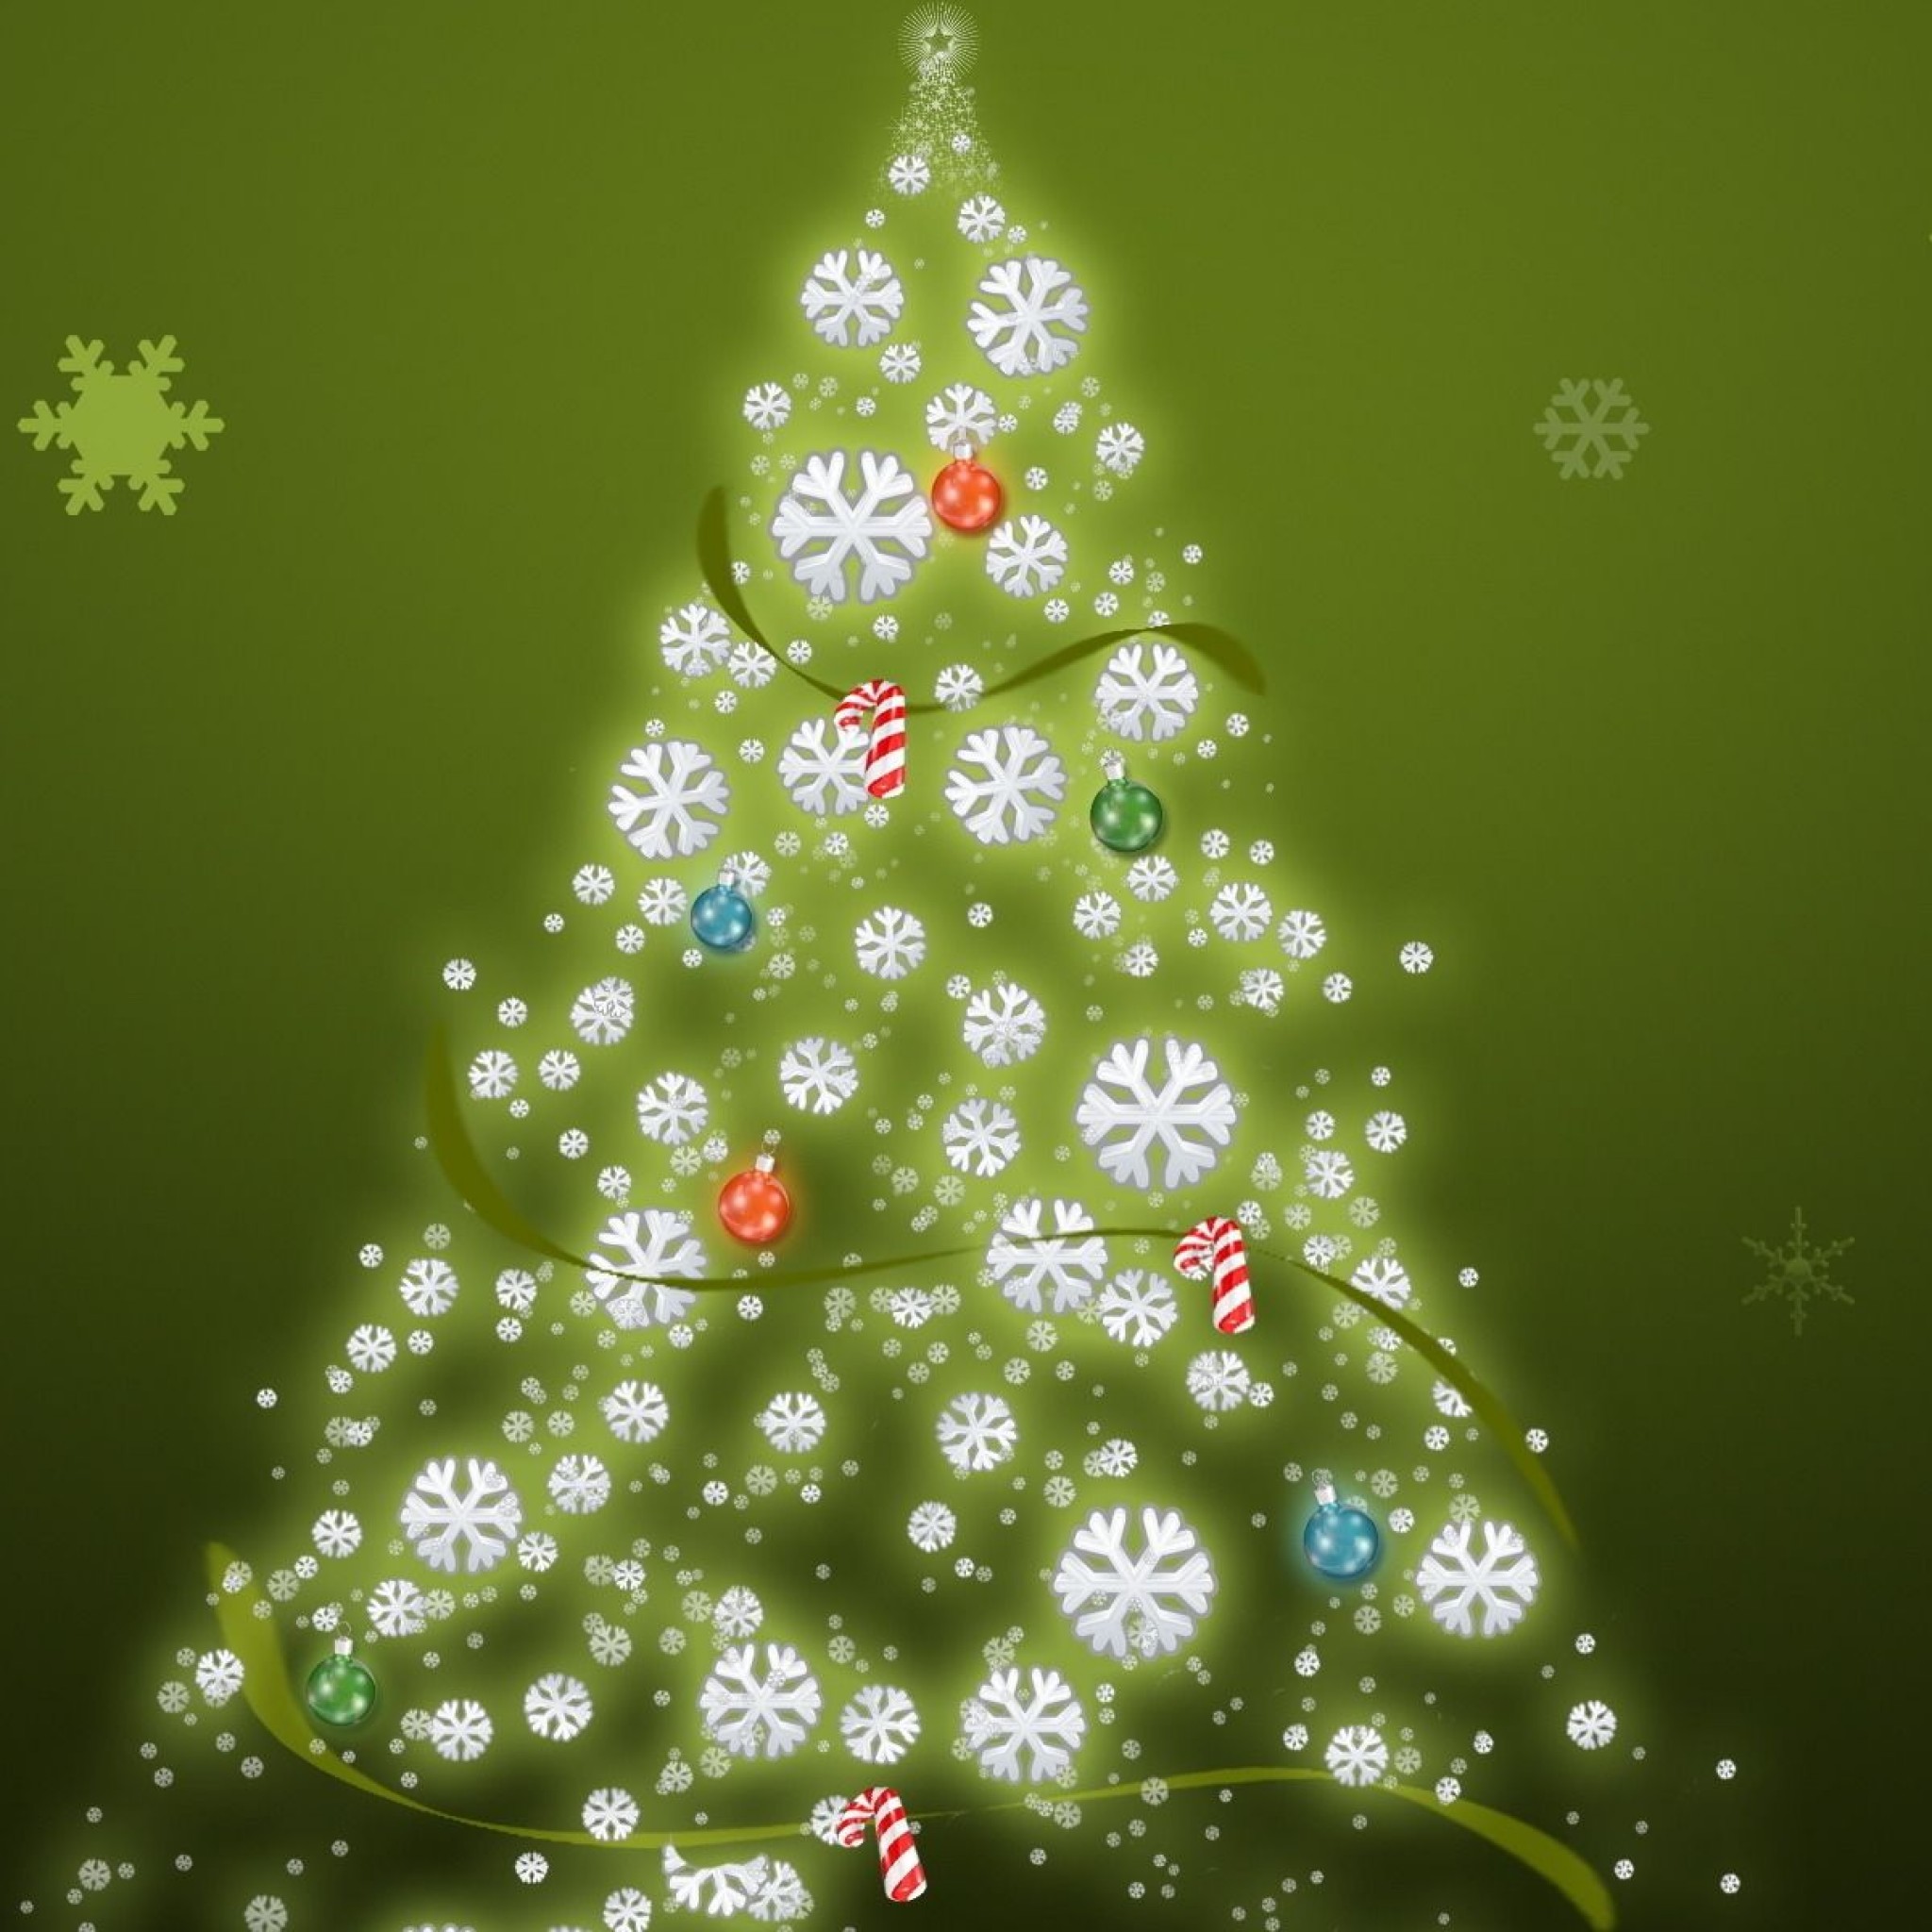 carta da parati di natale ipad,albero di natale,decorazione natalizia,albero,verde,abete rosso colorado